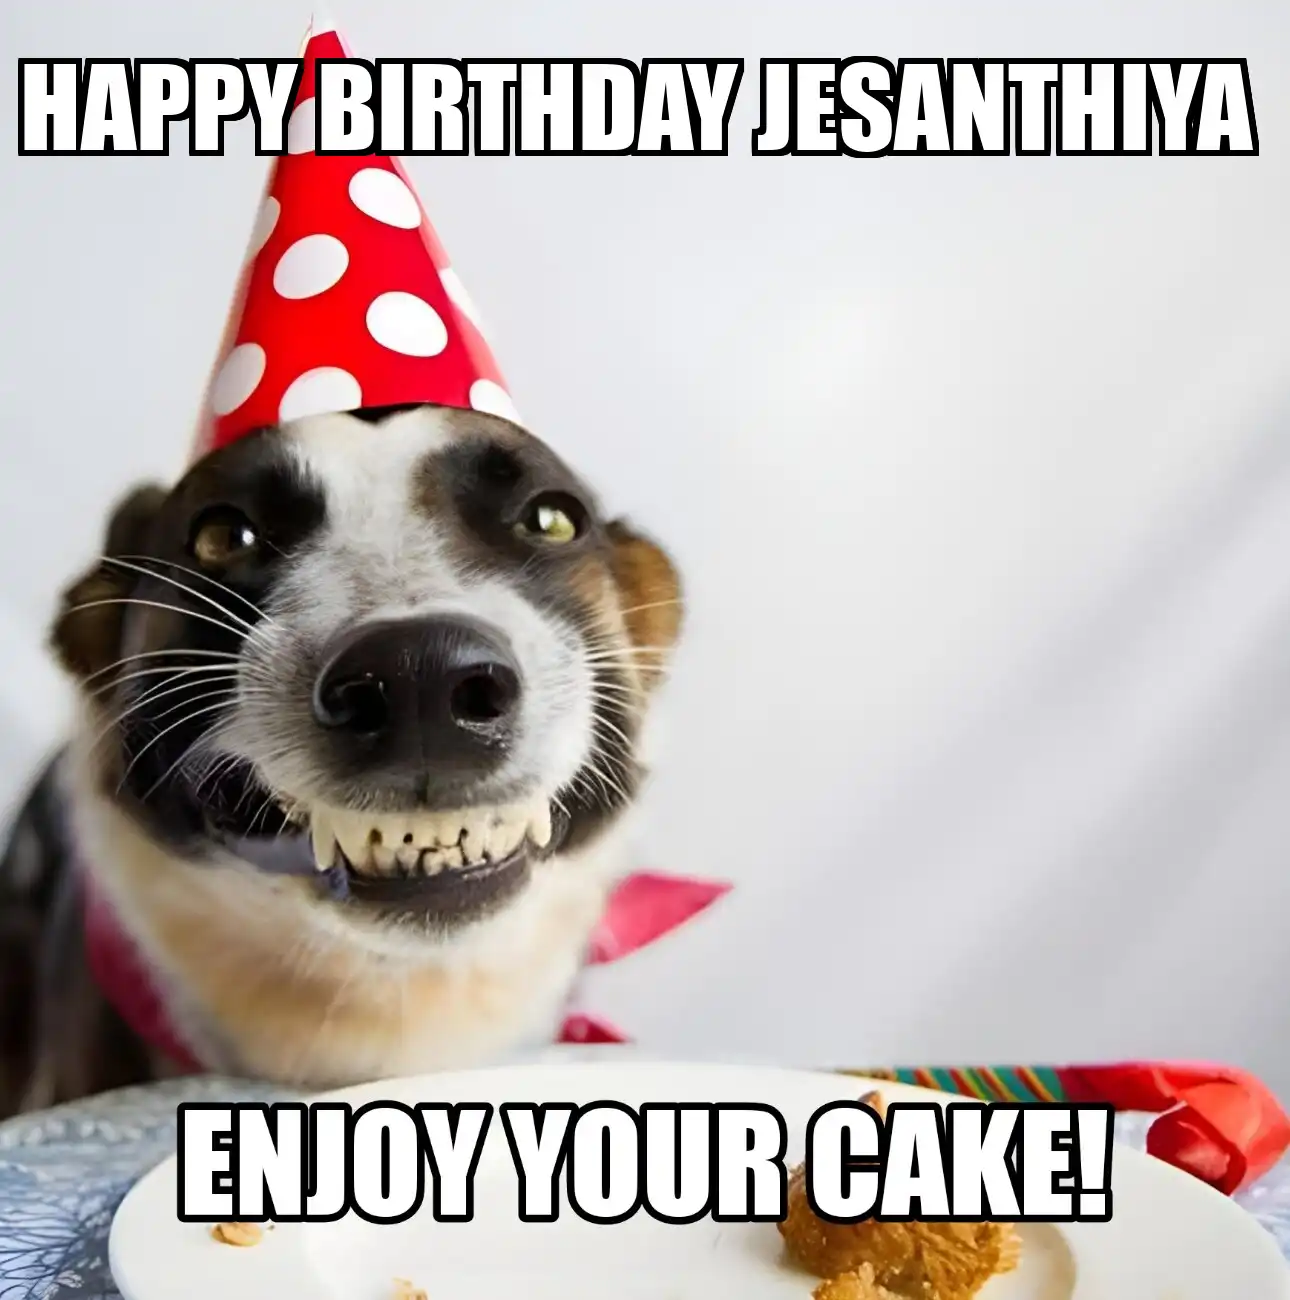 Happy Birthday Jesanthiya Enjoy Your Cake Dog Meme